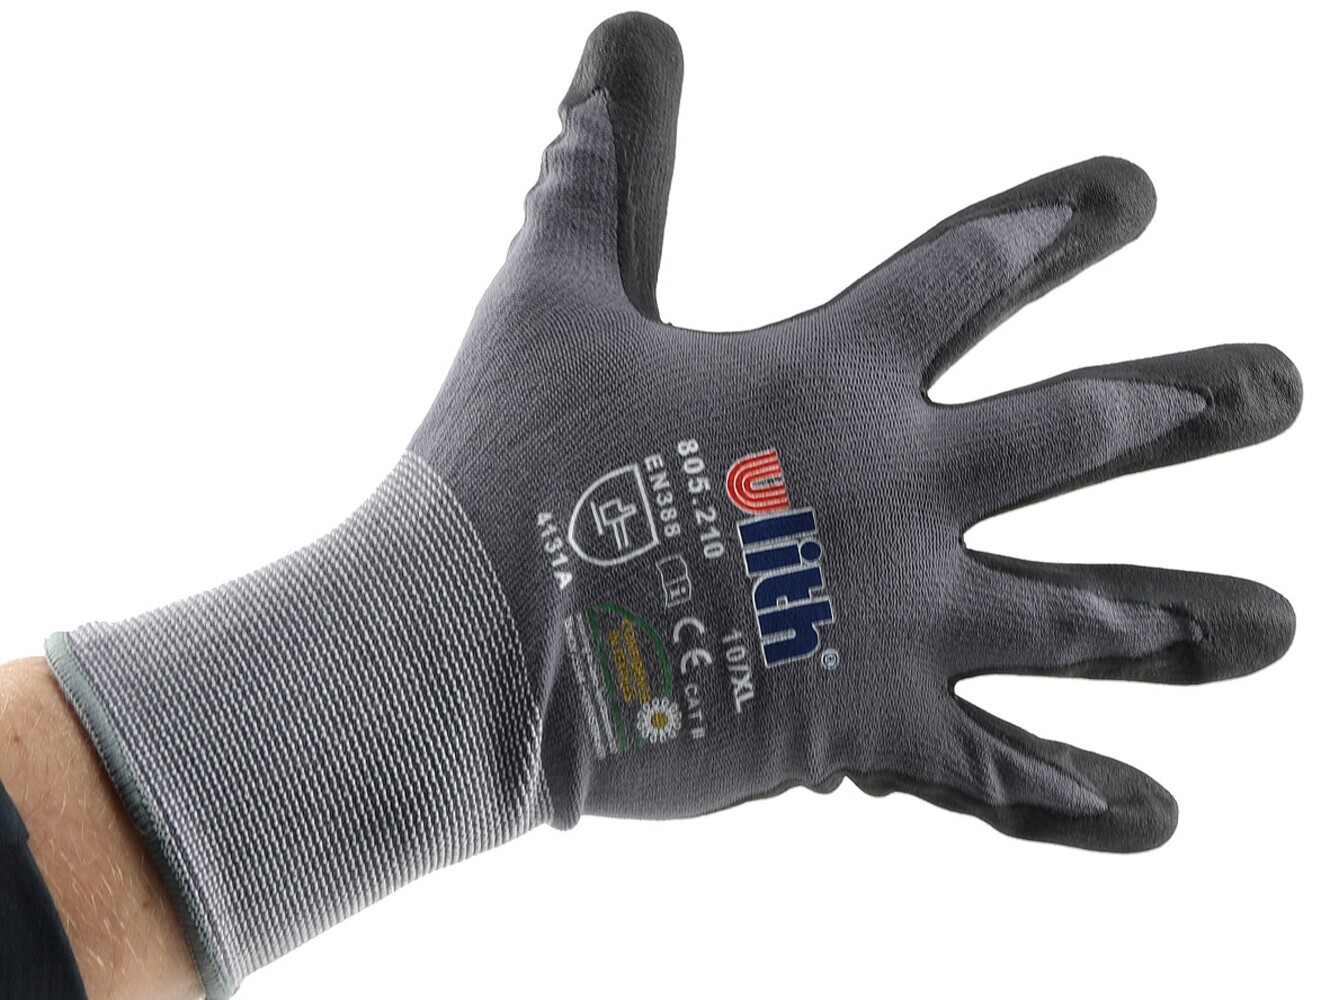 Professionelle ChiliTec Arbeits-Handschuhe mit robuster Kautschuk-Beschichtung in Größe 10, zugelassen nach Ökotex 100 Standard